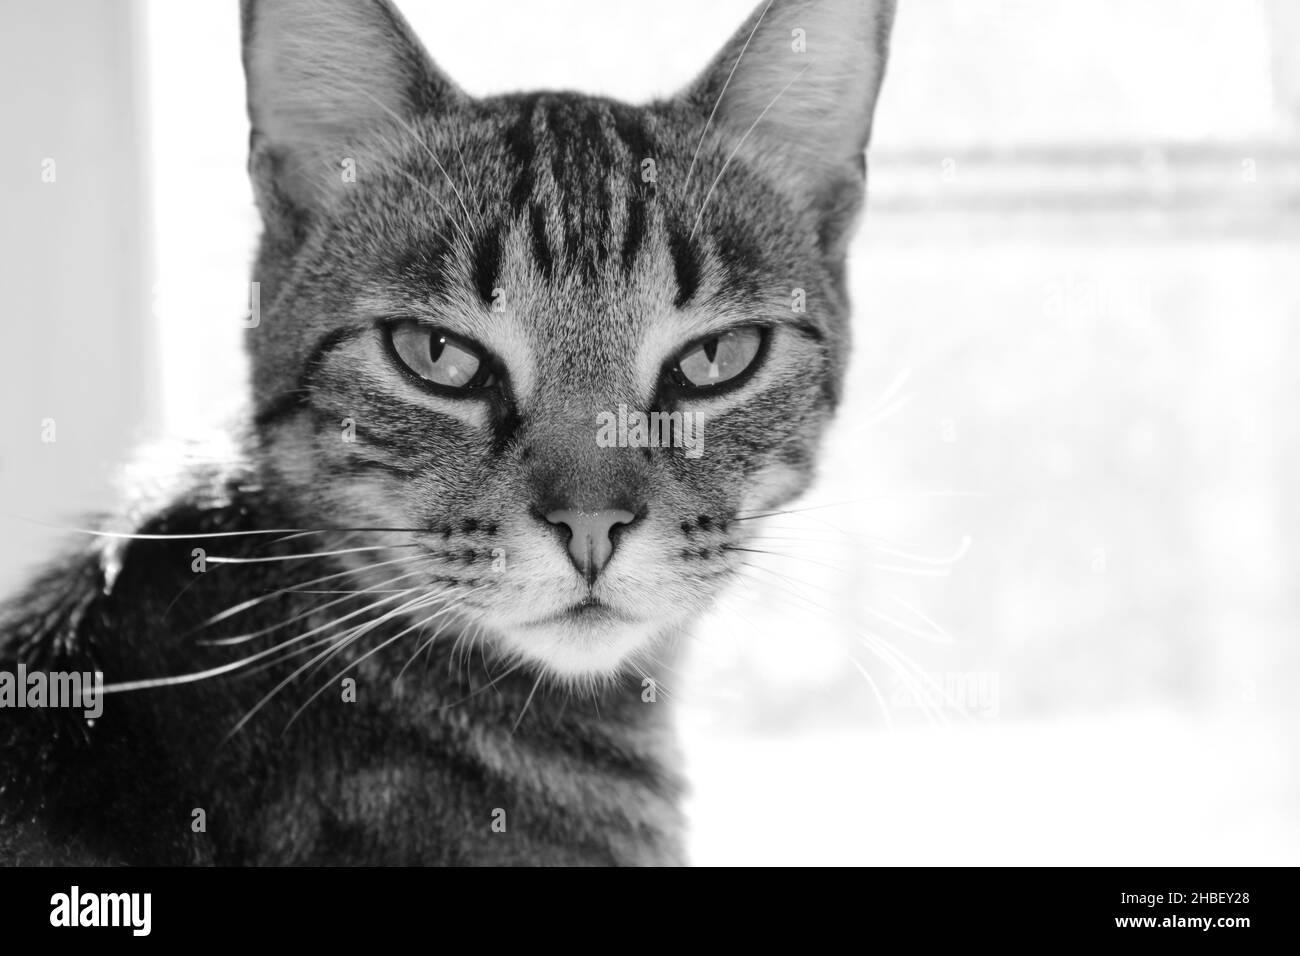 Ritratto di un gatto tabby in bianco e nero messo a fuoco vicino la macchina fotografica. Gatto concentrato aspetto arrabbiato. Divertente. Concetto Foto Stock